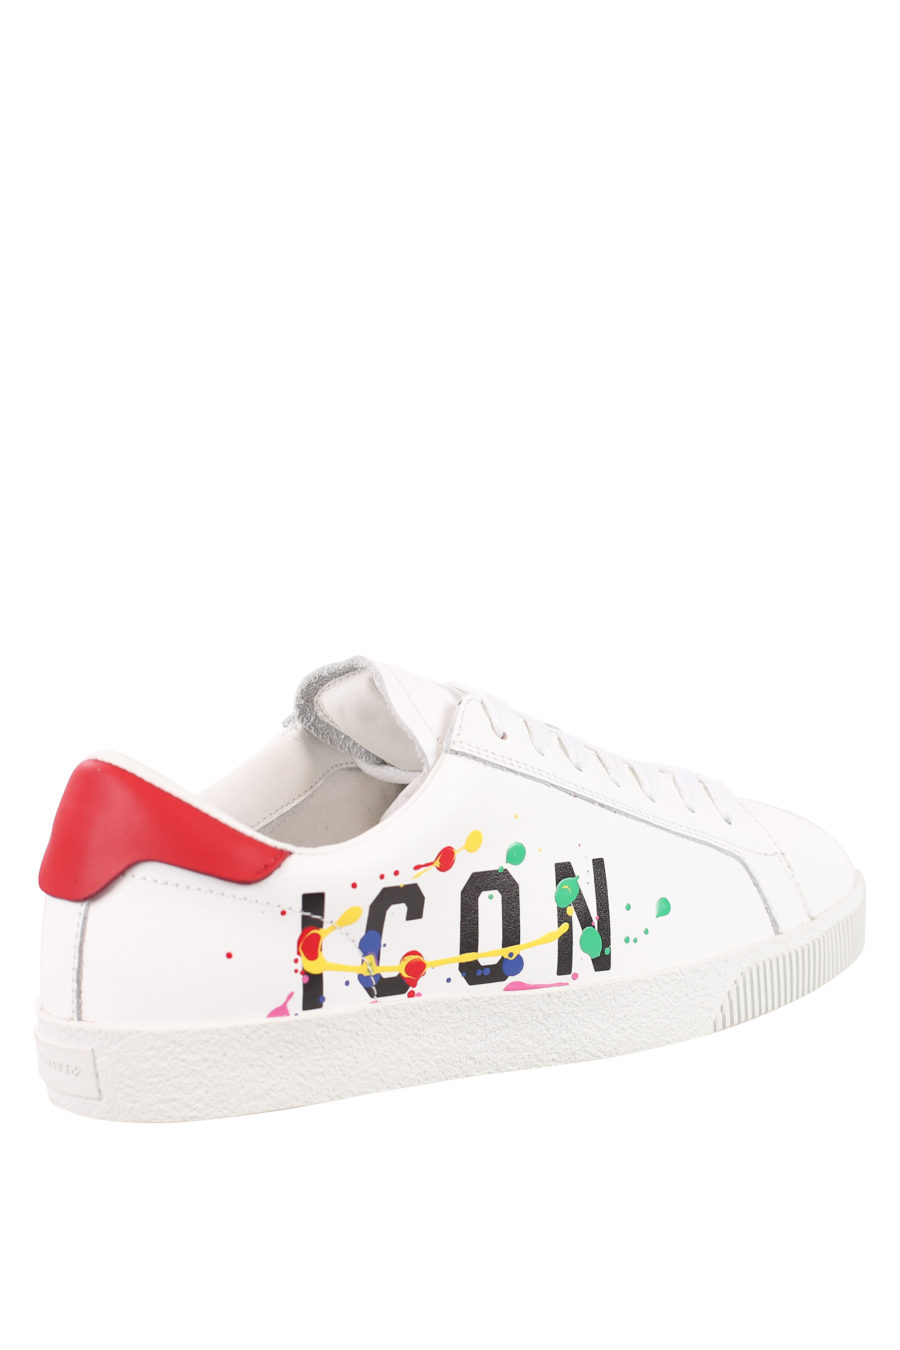 Zapatillas blancas con logo "icon splash" - IMG 0708